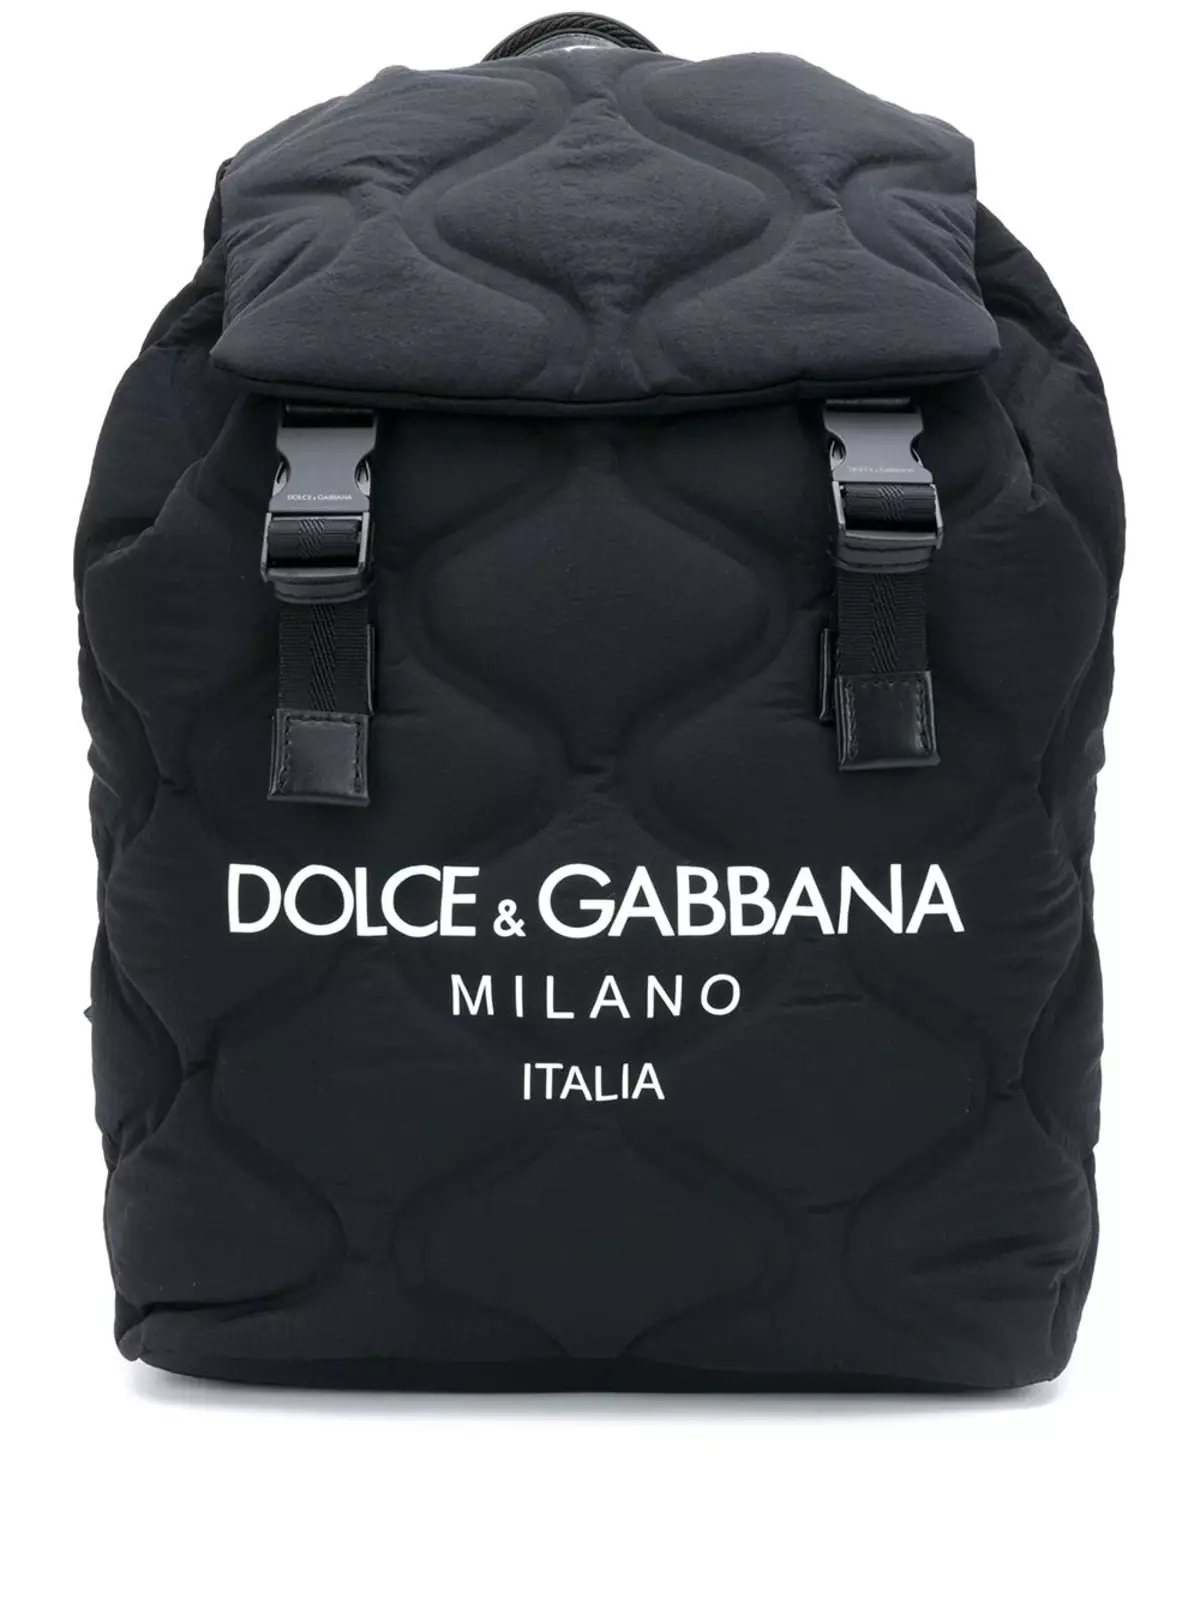 Dolce & Gabbana azu: umu nwanyi na nke nwoke, black na uhie, akpukpo aru akpukpo aru na udiri ndi ozo. Esi mata ọdịiche dị na mbụ na nnomi? 2559_32